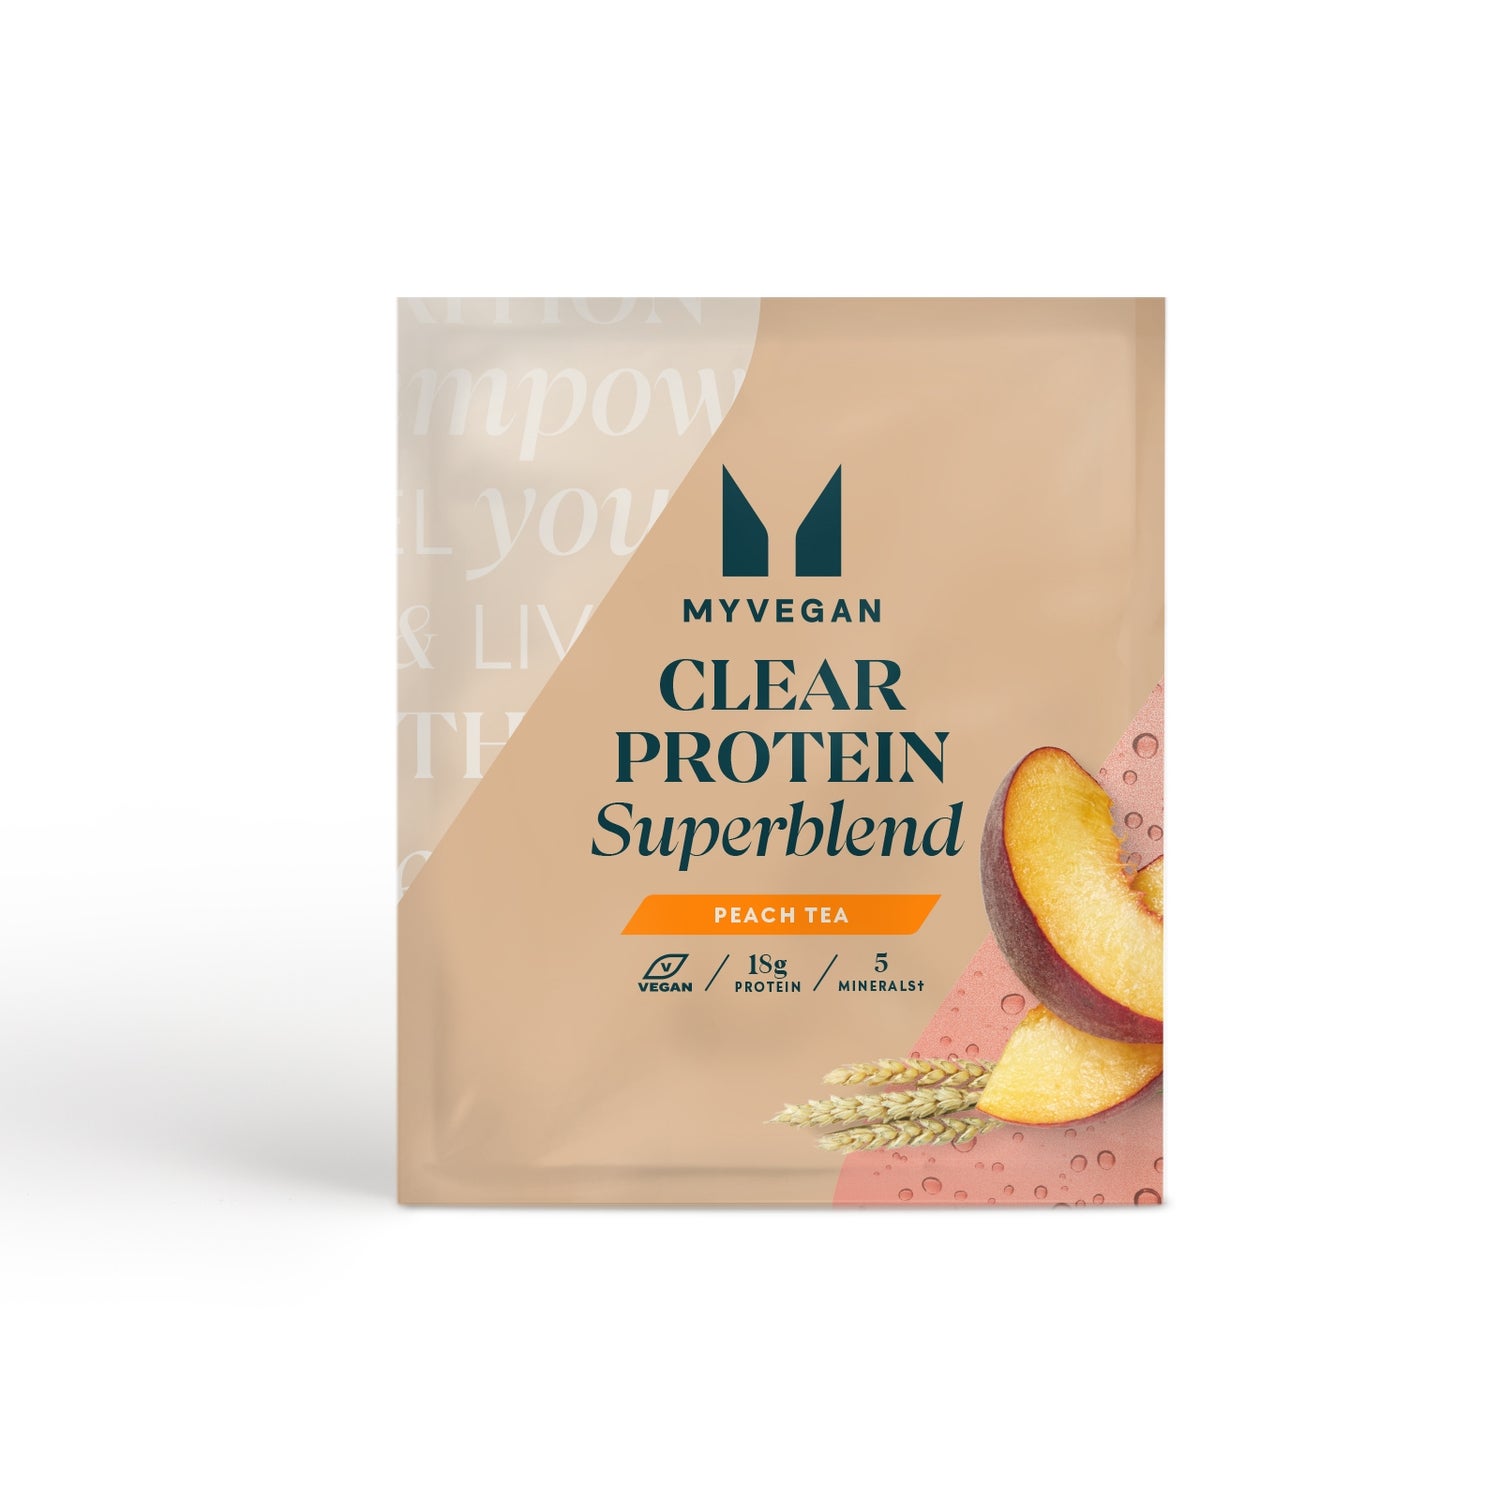 Myvegan Clear Protein Superblend (Sample) - 1servings - Peach Tea